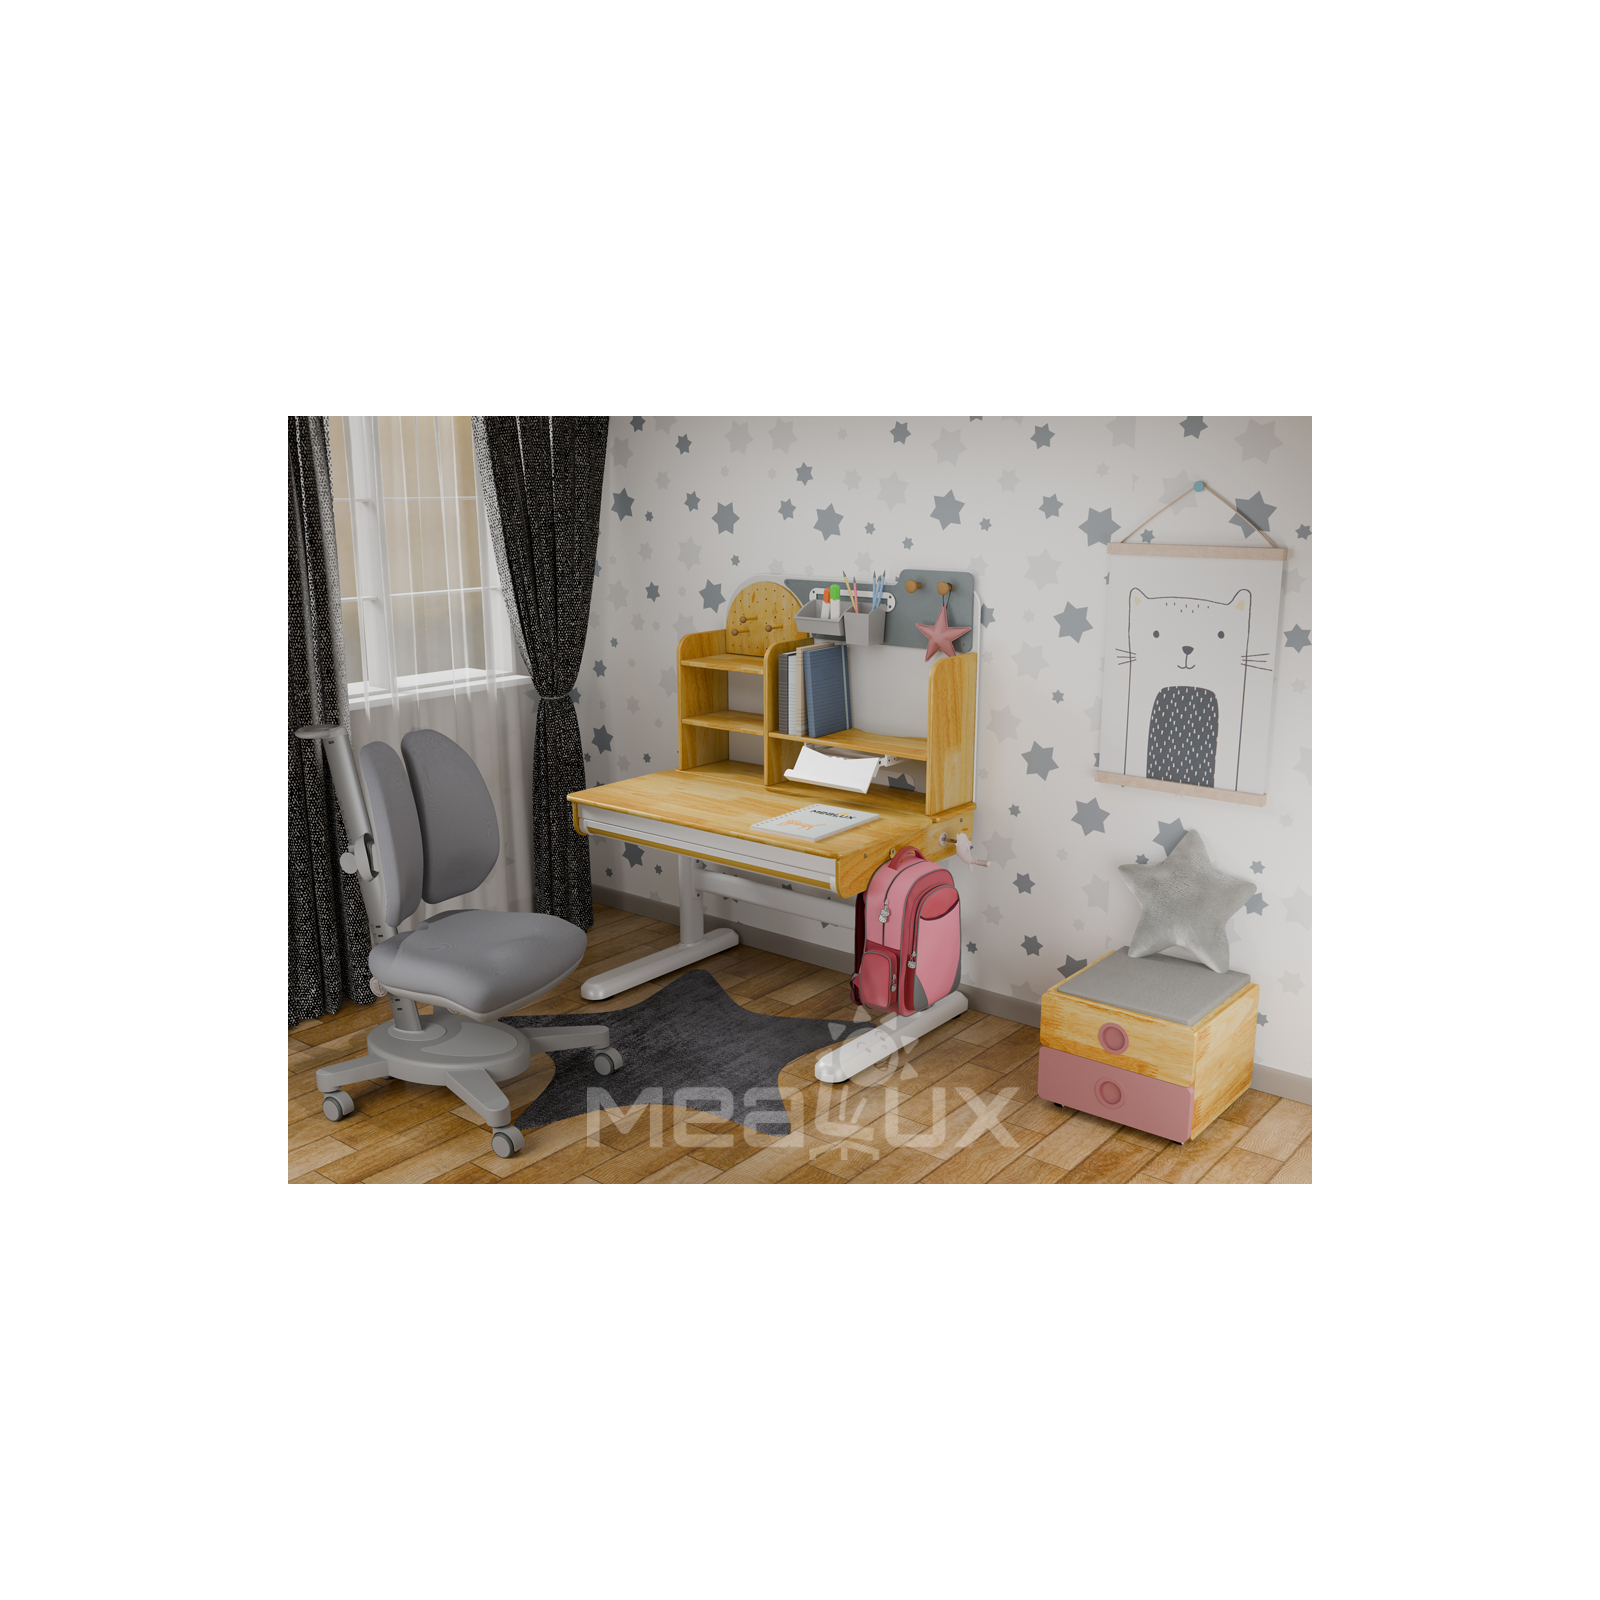 Парта с креслом Mealux Timberdesk S (парта+кресло+тумба) (BD-685 S+ box BD 920-2 PN+Y-115 G) изображение 2